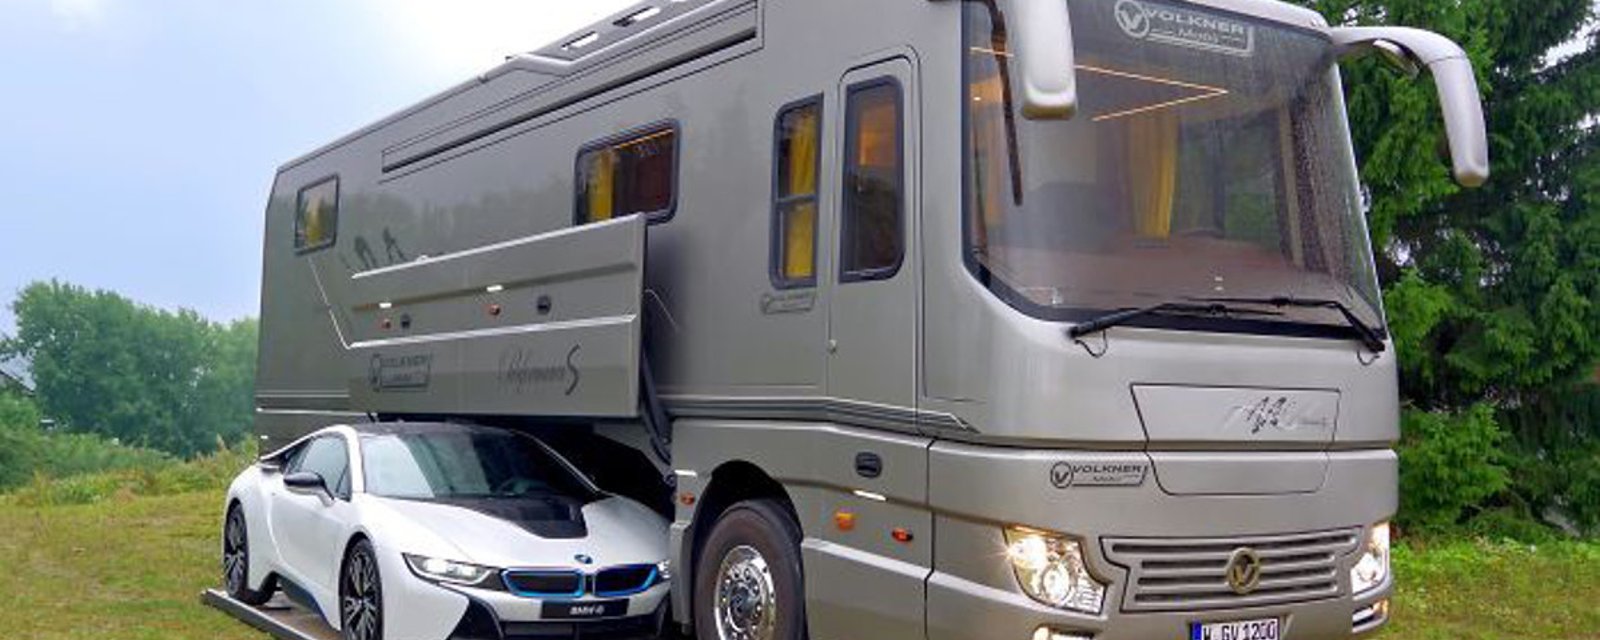 Un camping-car de 1.7 millions$ avec garage intégré parait bien ordinaire... Jusqu'à ce qu'on voit l'intérieur! 